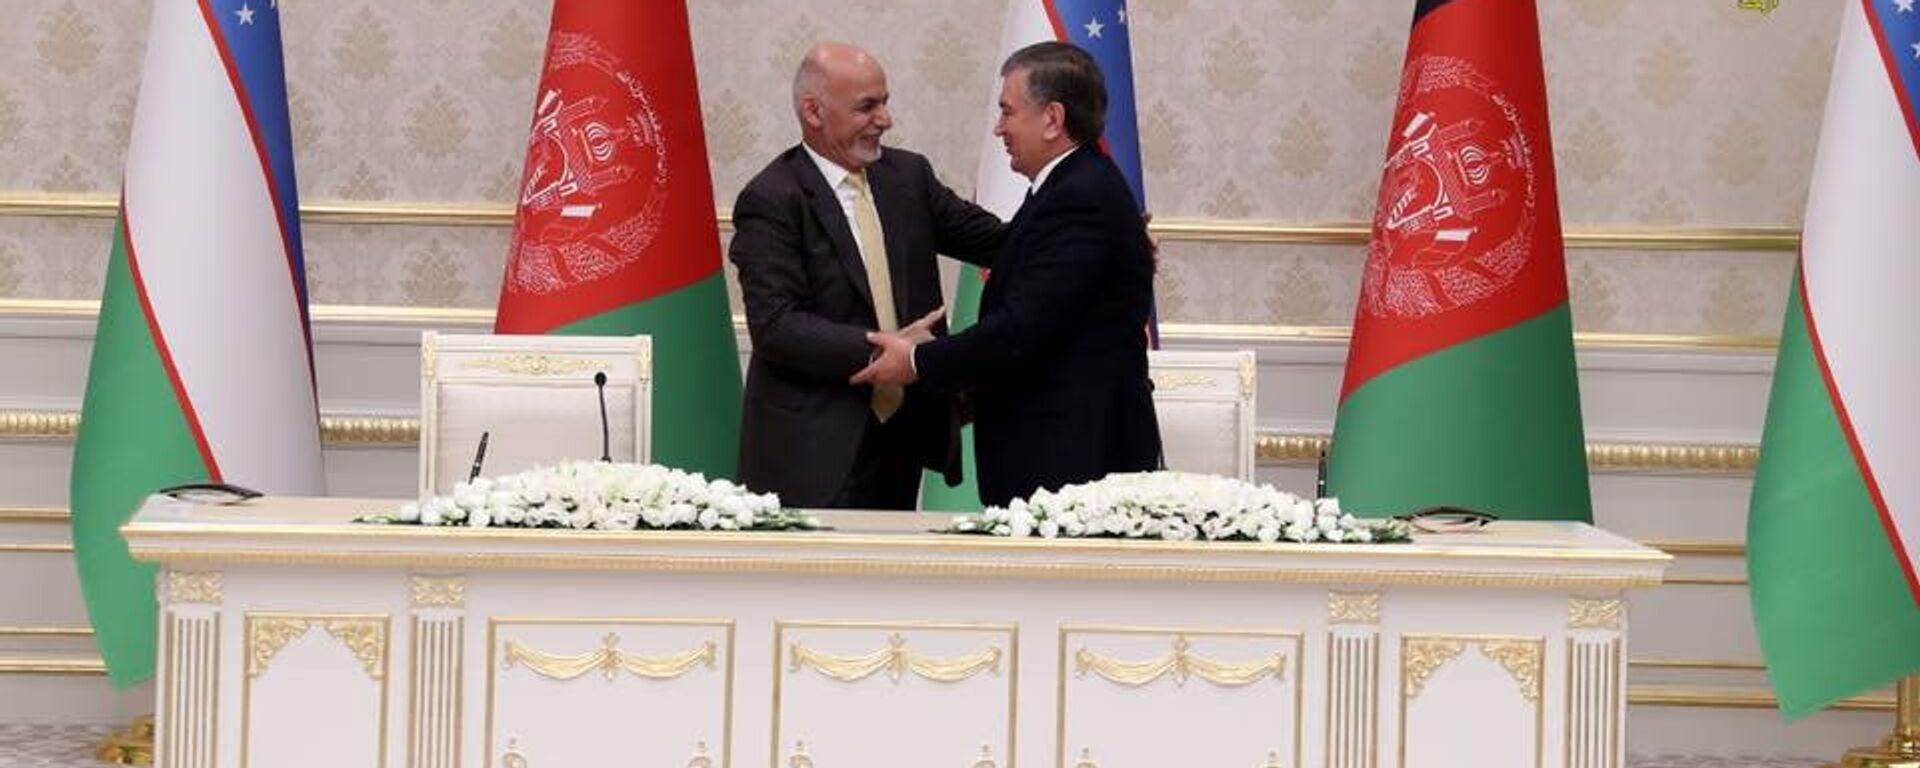 Президент Афганистана Ашраф Гани и Президент Узбекистана Шавкат Мирзиёев во время подписания соглашения о сотрудничестве - Sputnik Узбекистан, 1920, 12.07.2021